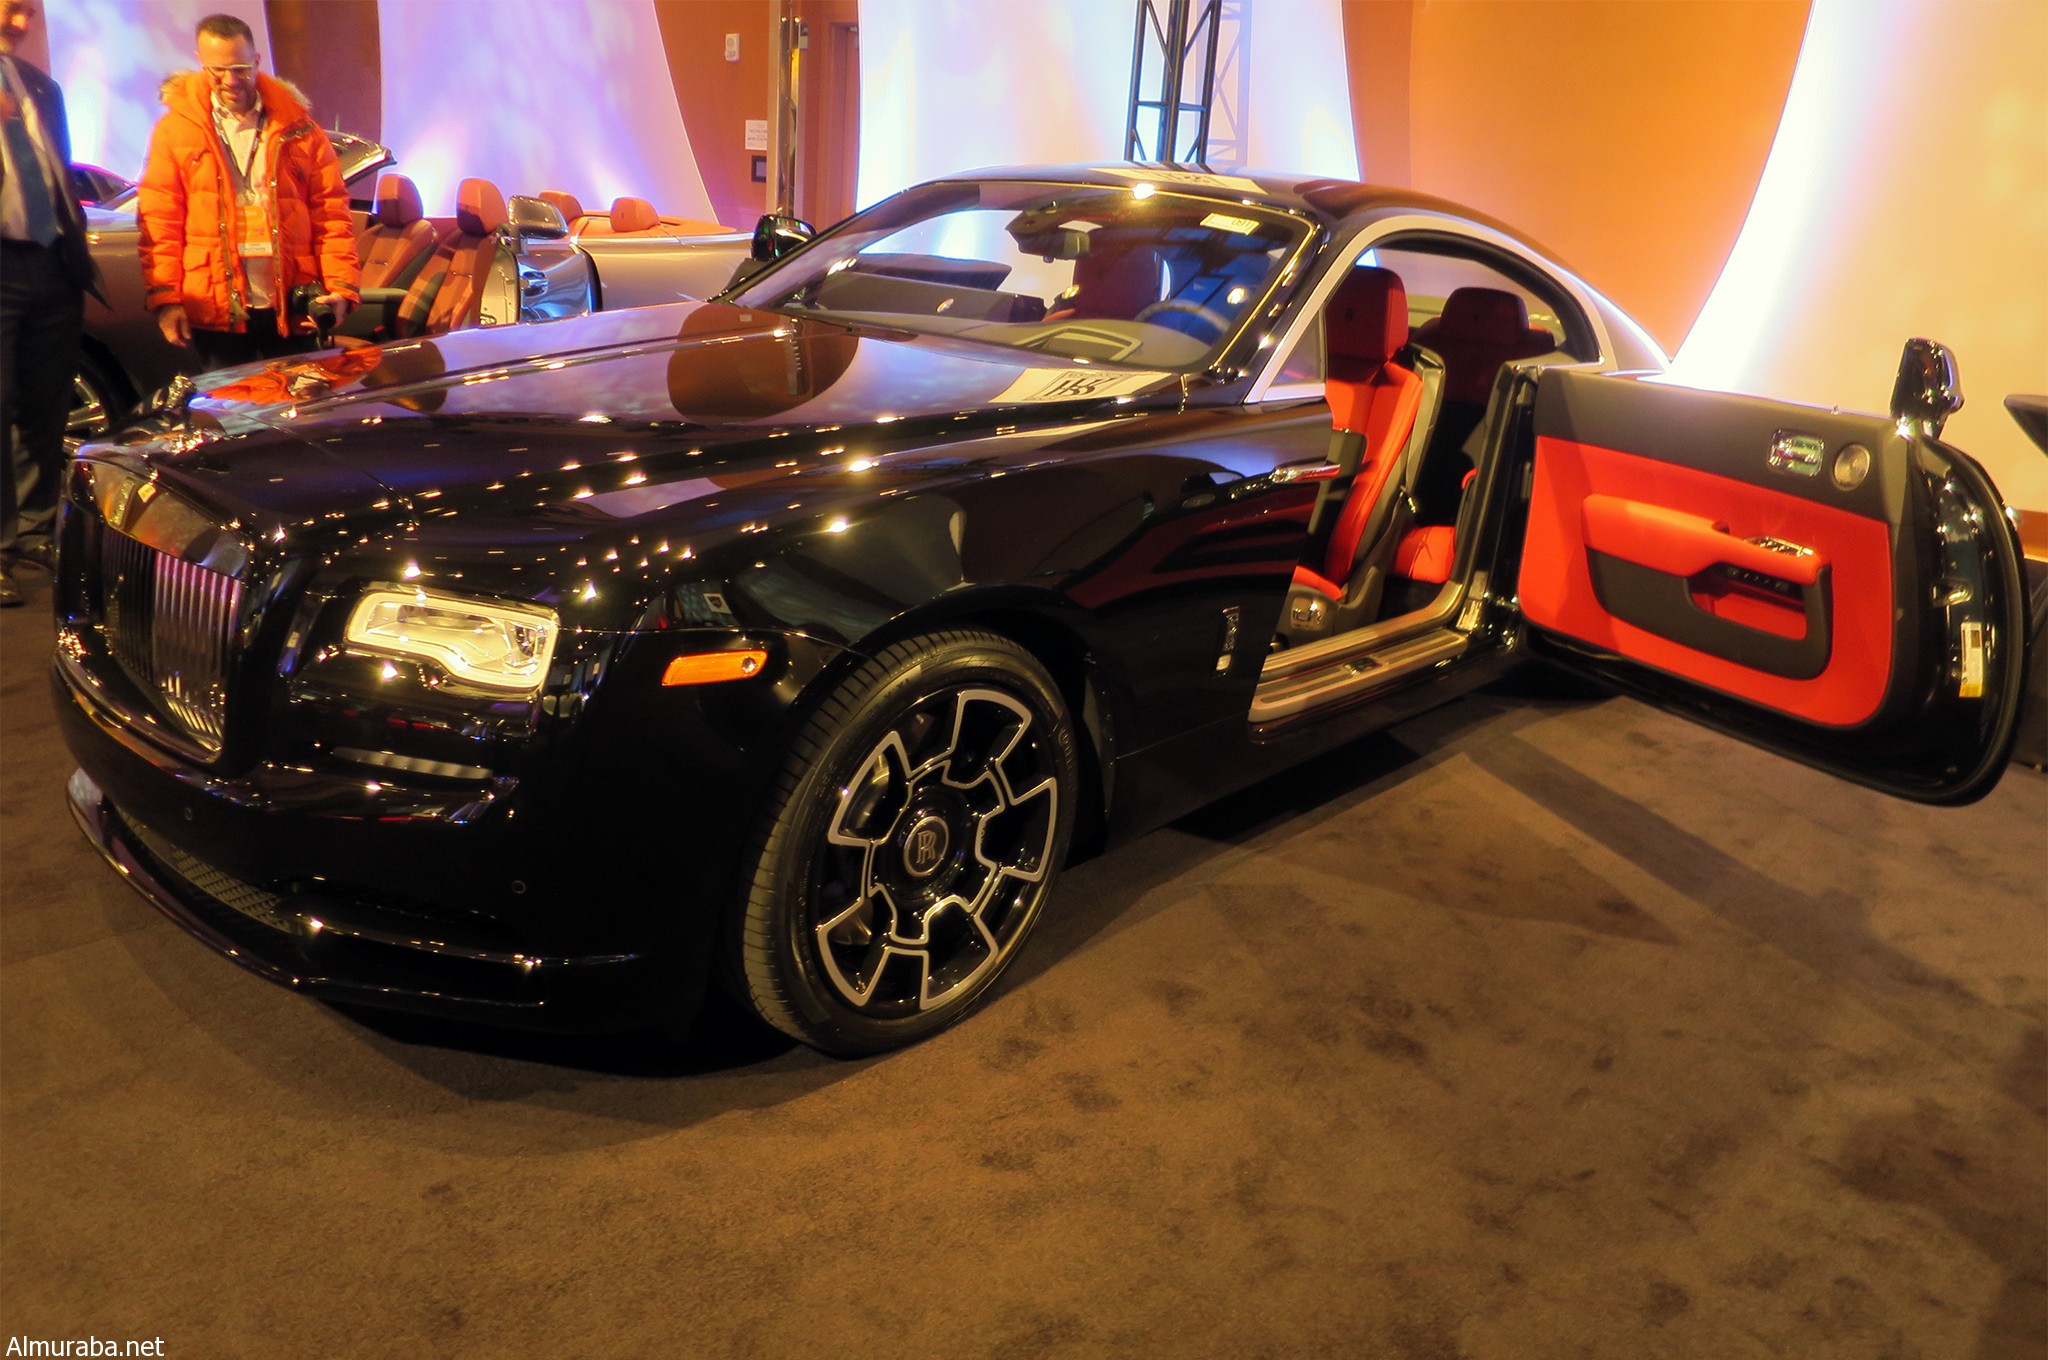 “بالصور” شاهد “رولز رويس” رايث بلاك بادج كوبيه ذات العجلات الكربونية بديترويت Rolls-Royce Wraith Black Badge Coupe